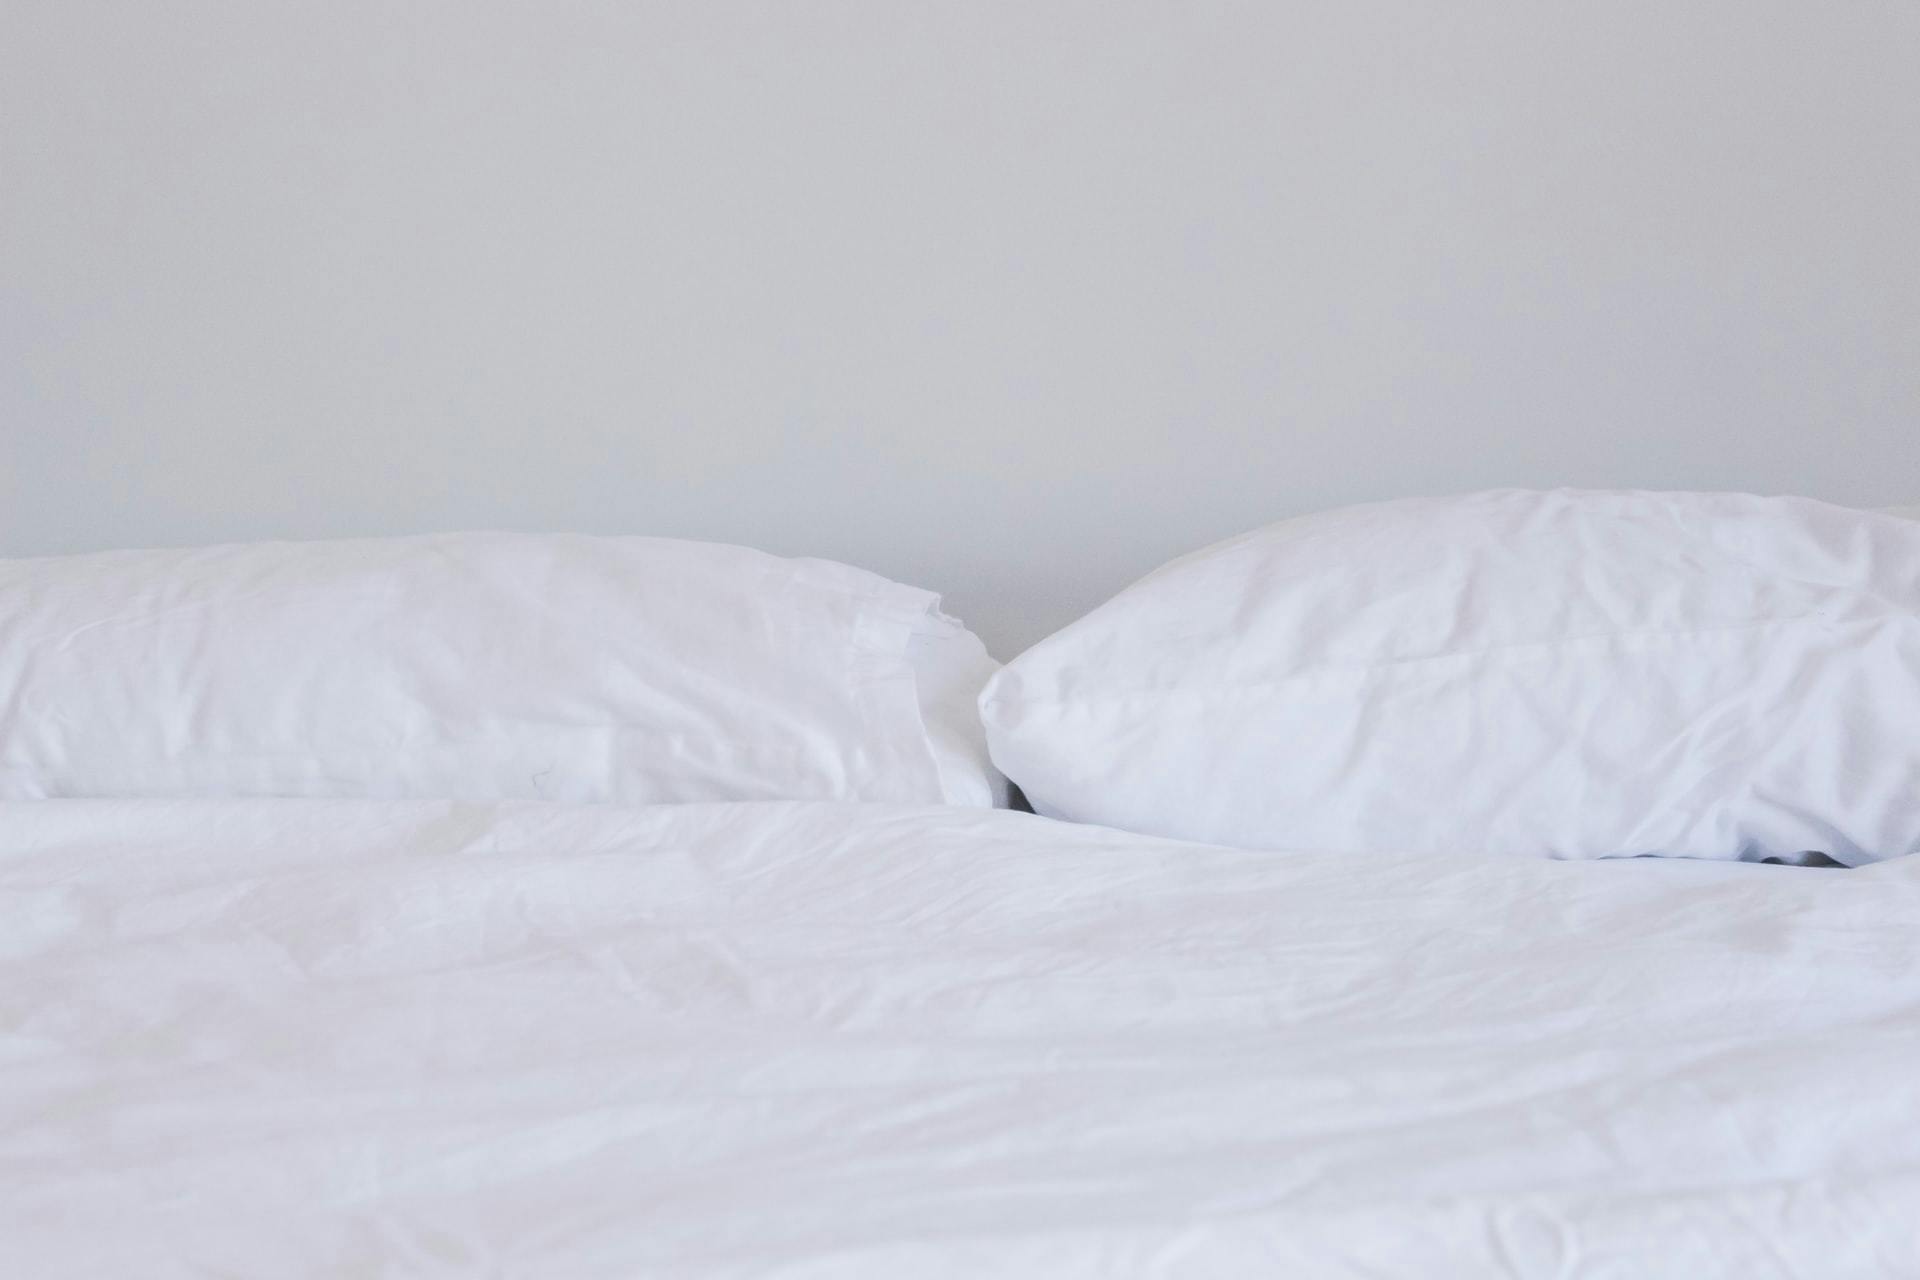 El peliagudo caso de retirar las incómodas etiquetas de las almohadas
